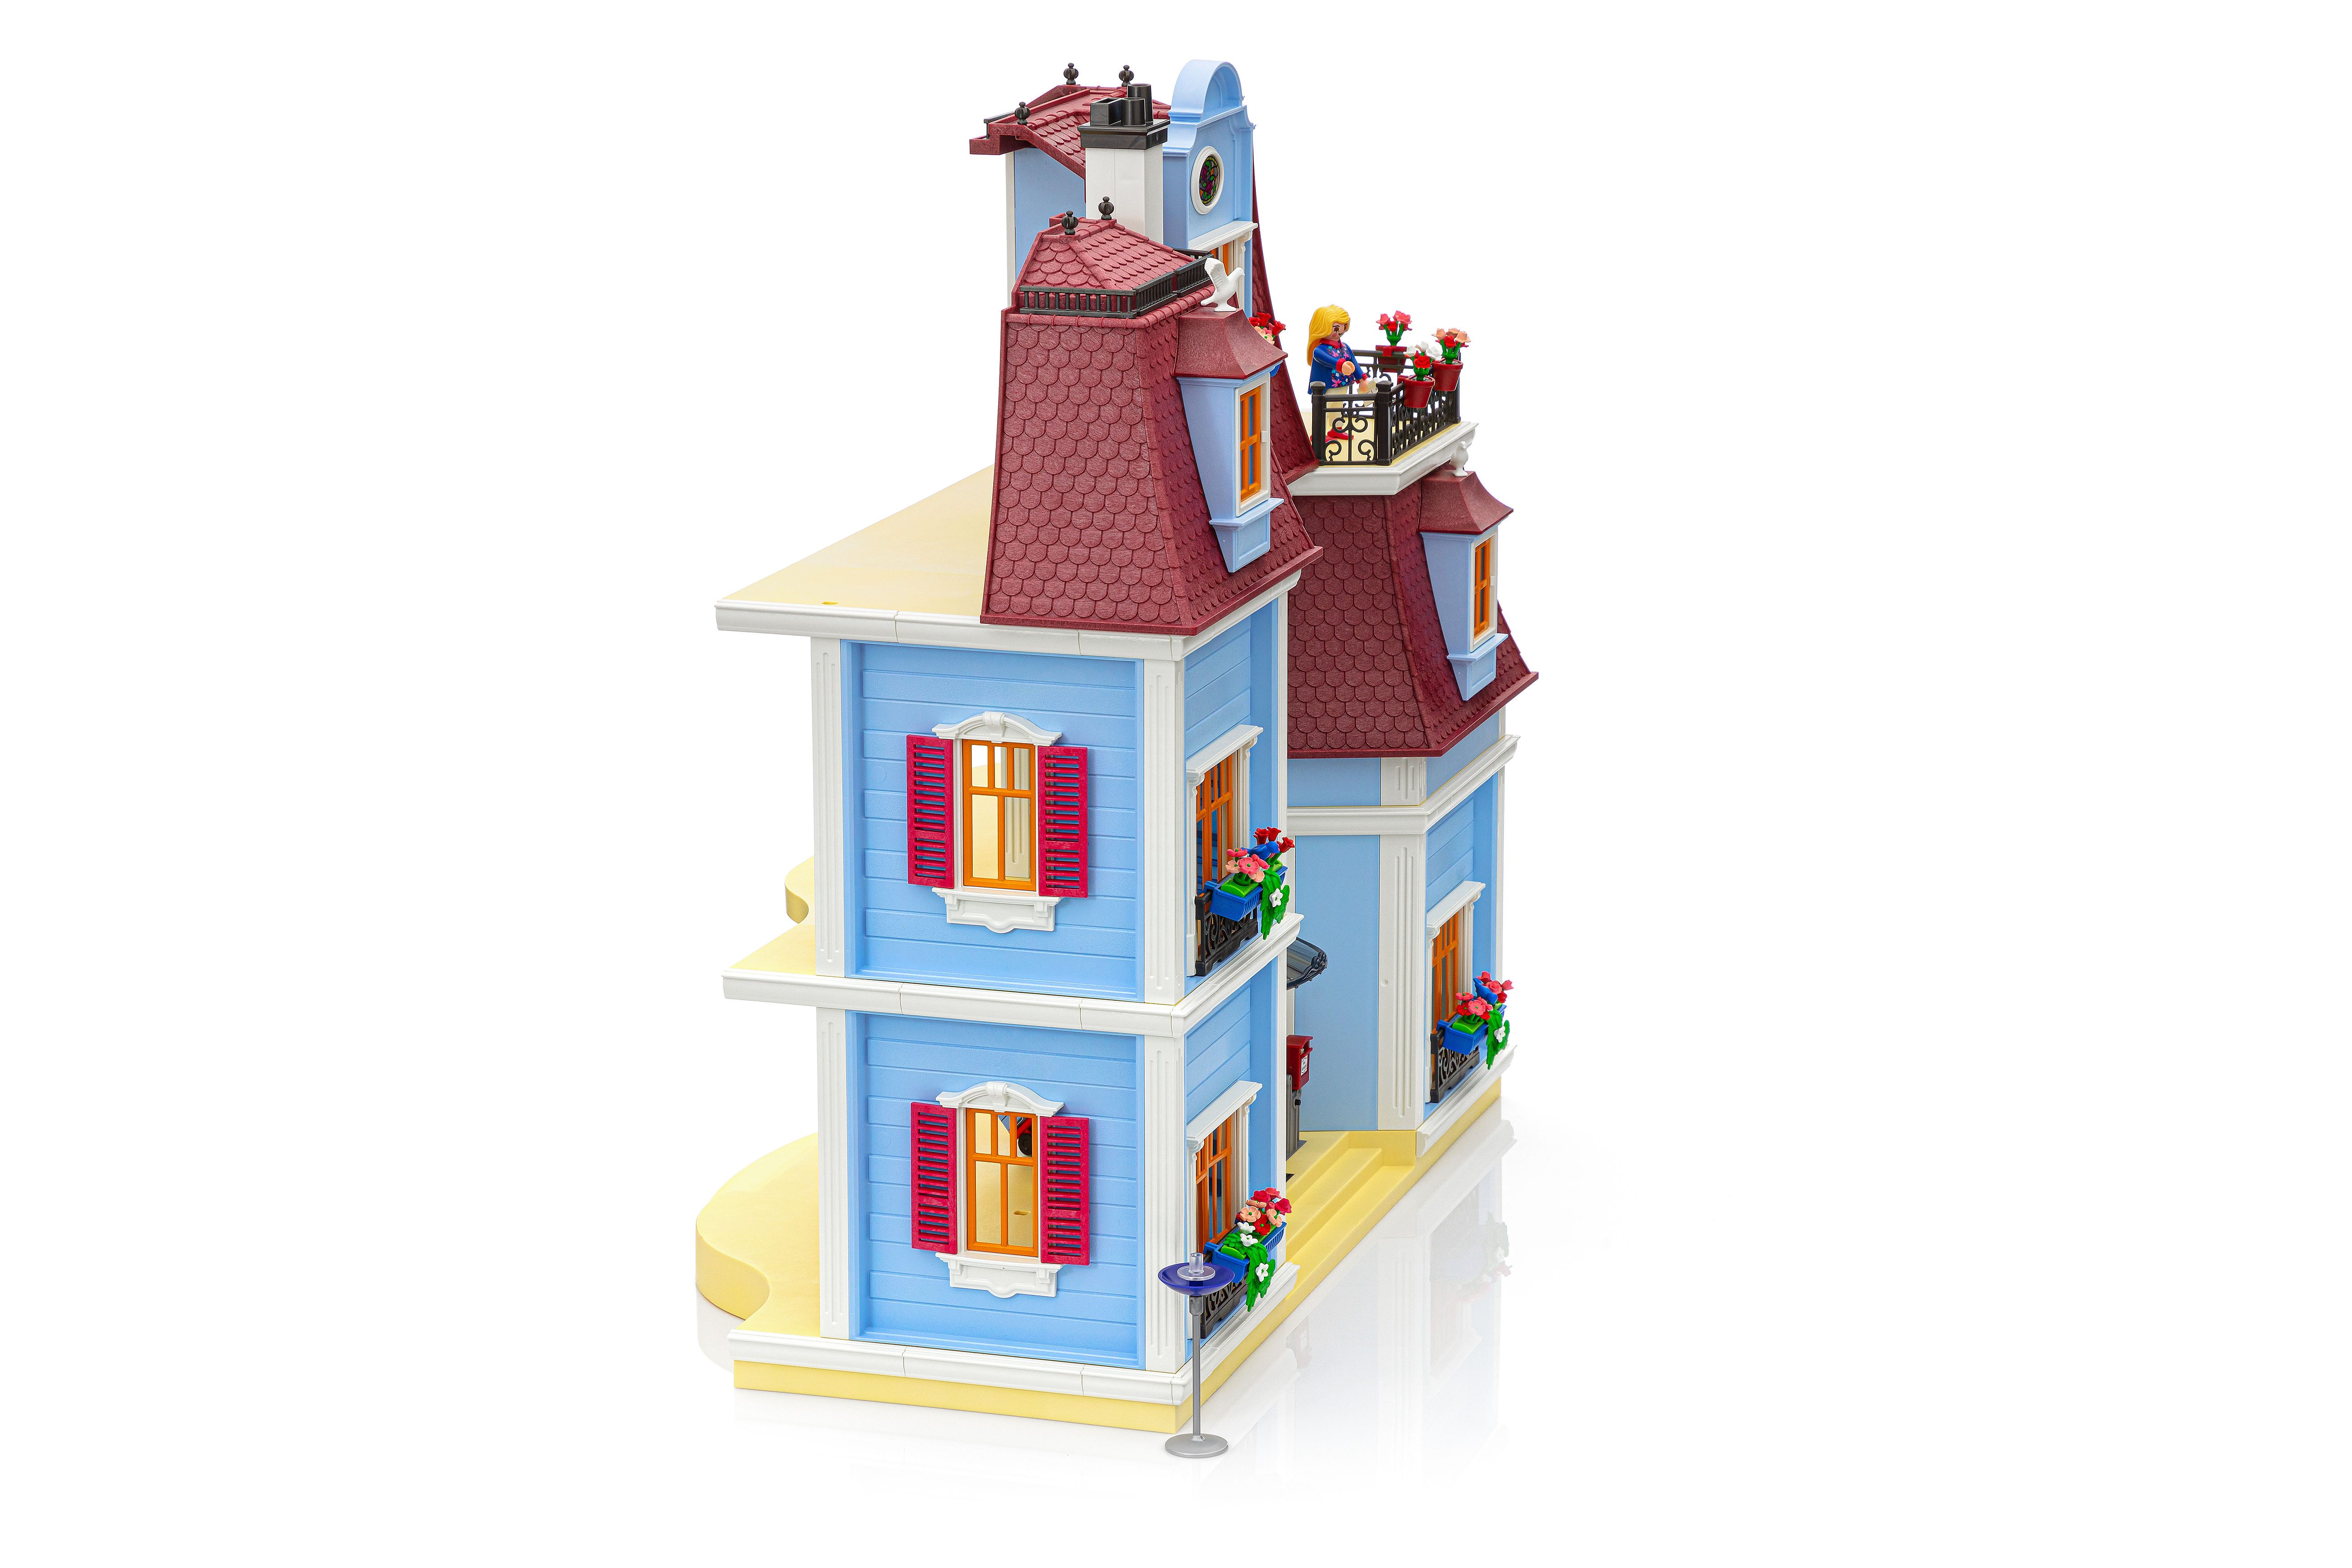 Grande maison traditionnelle Playmobil Dollhouse 70205 - La Grande Récré